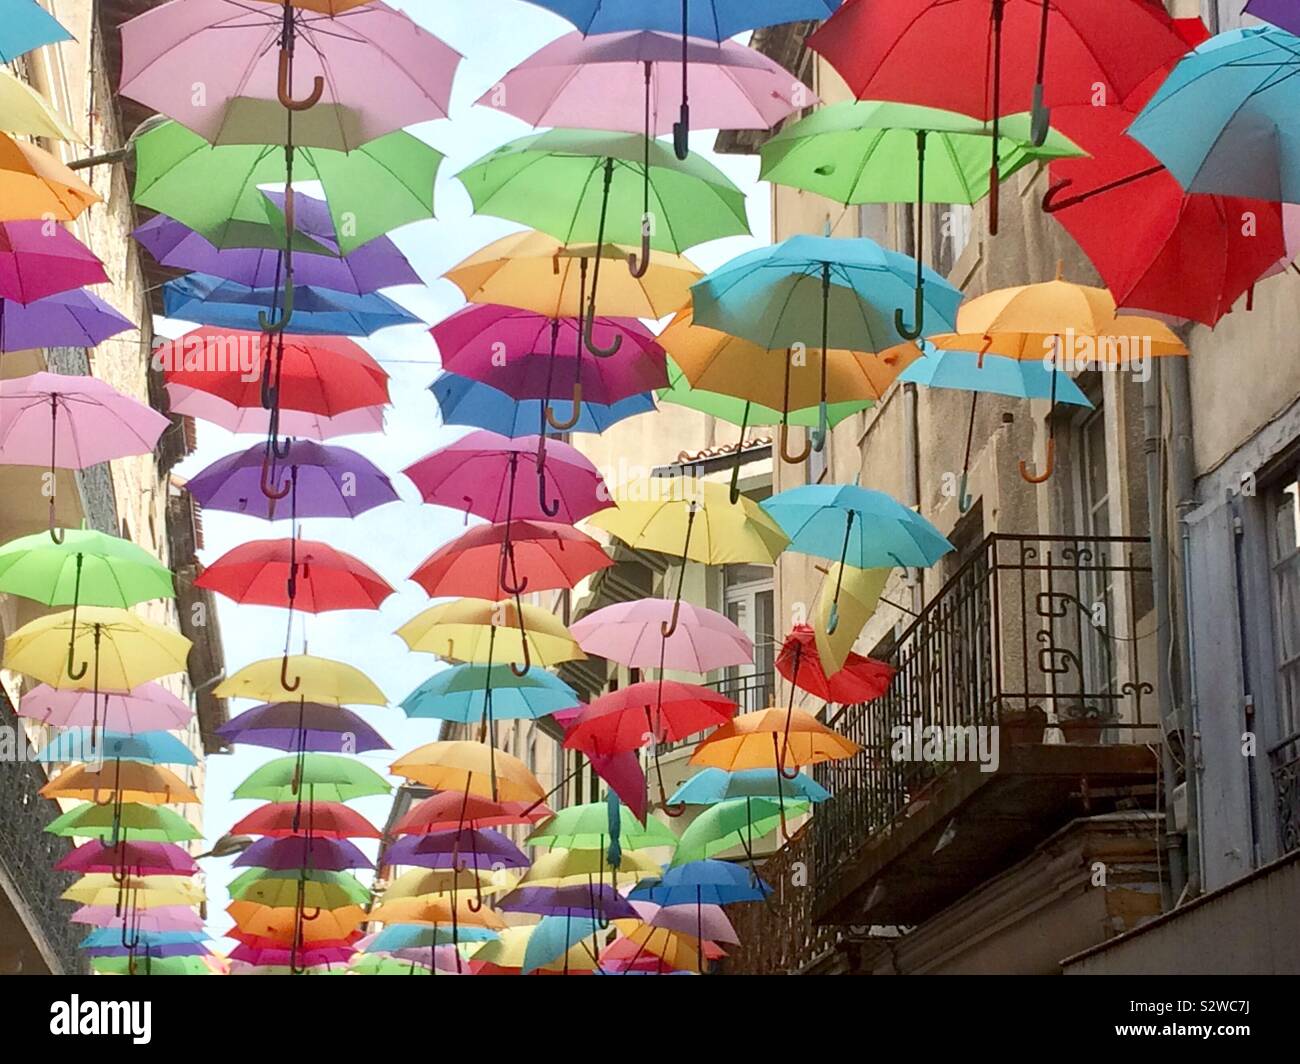 Ombrelloni colorati appesi in una strada, Carcassonne, Francia. Foto Stock